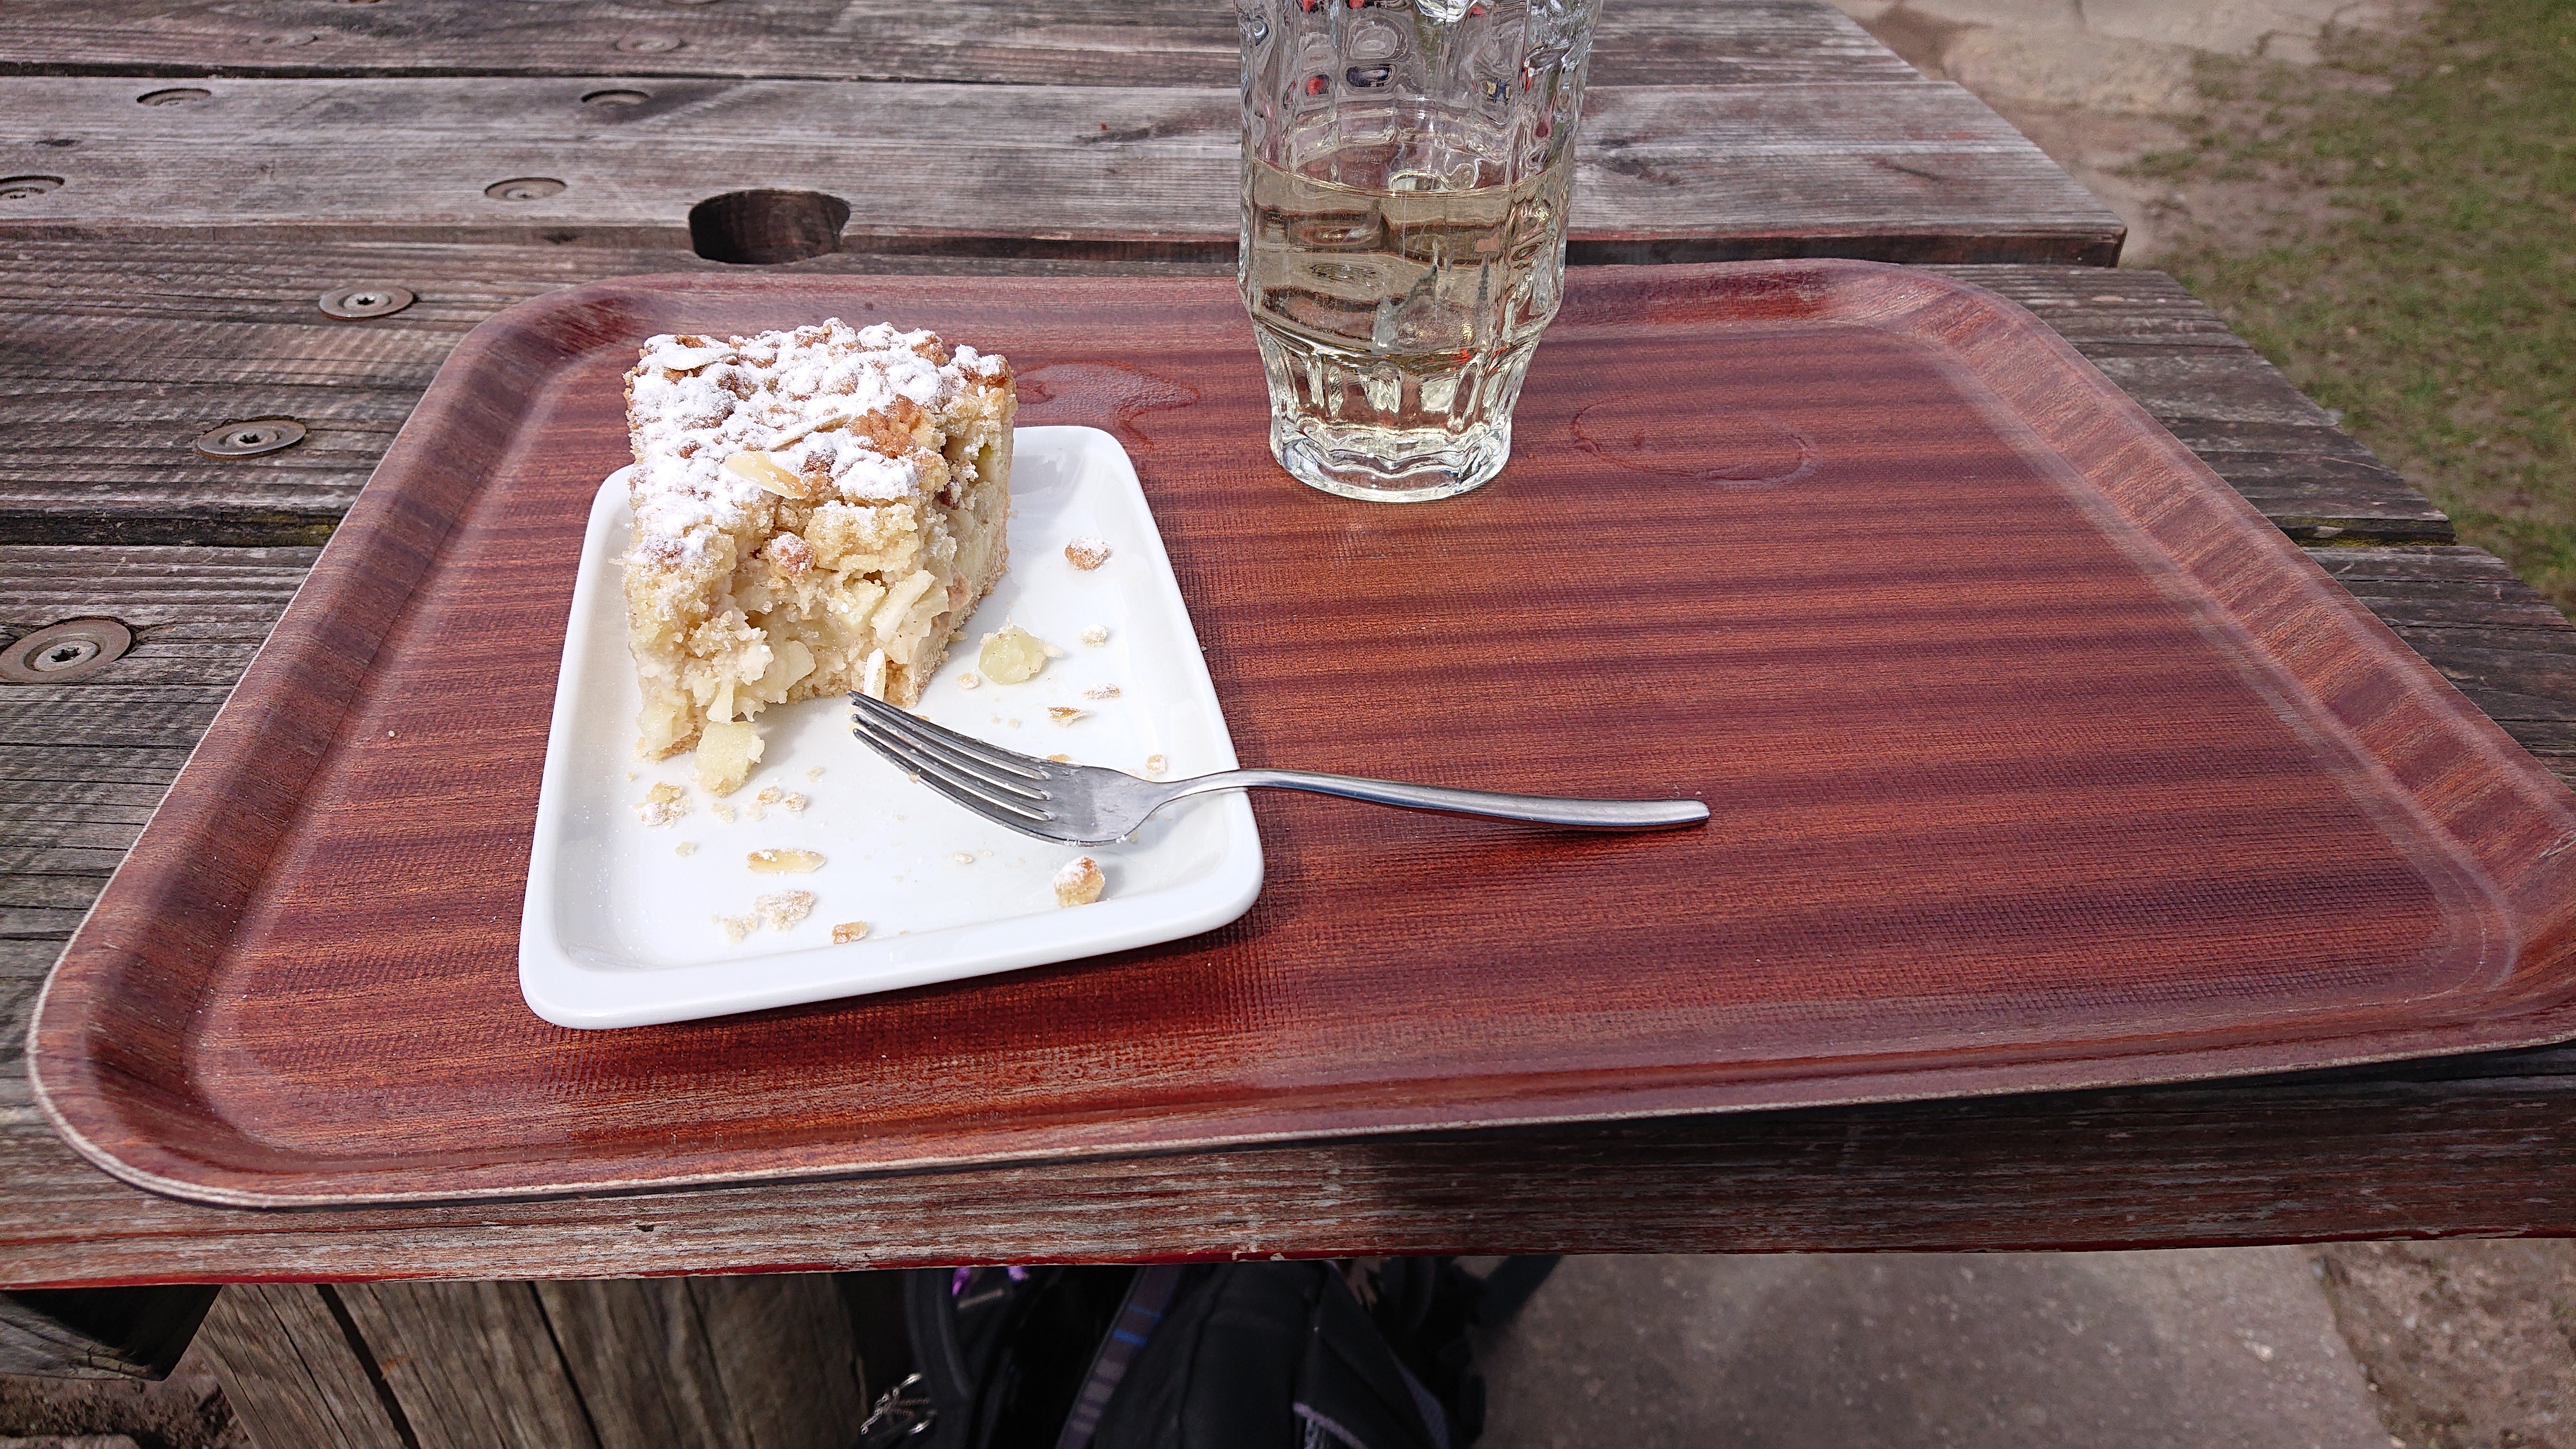 Auf dem Bild ist ein Tablet zu sehen. Auf der linken seite ist ein Teller mit teilweise aufgegessenem Apfel-Streuselkuchen und rechts daneben ein Glas mit Apfelschorle